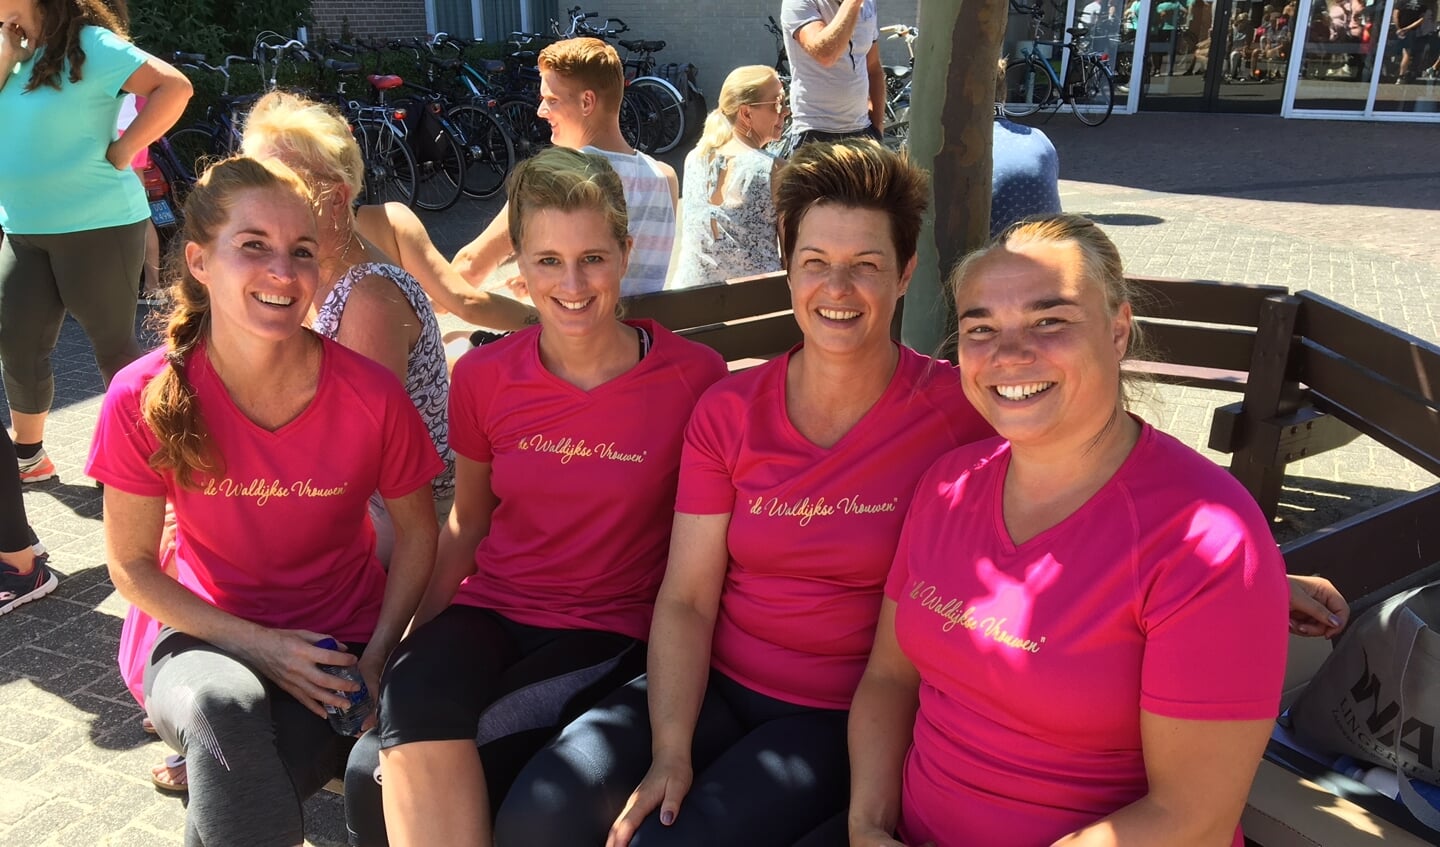 Team “De Waldijkse vrouwen”.